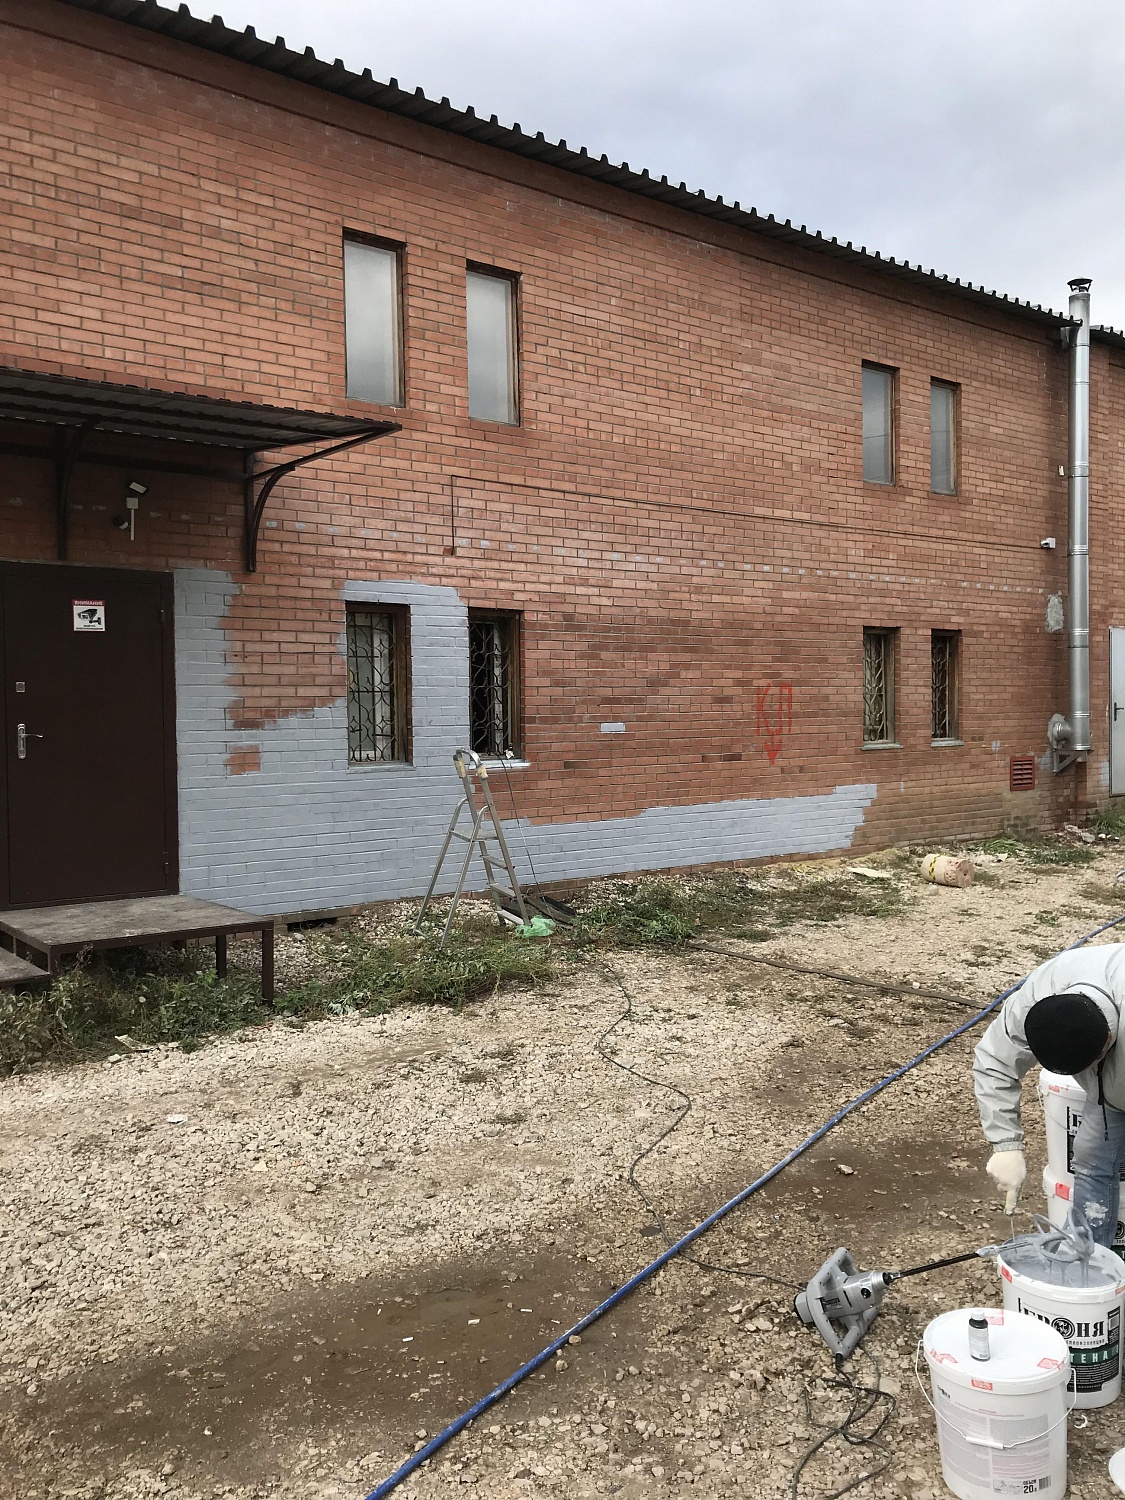 Броня Стена и Броня Фасад при теплоизоляции фасада помещения и металлических ворот  (г. Тольятти Самарская область)  